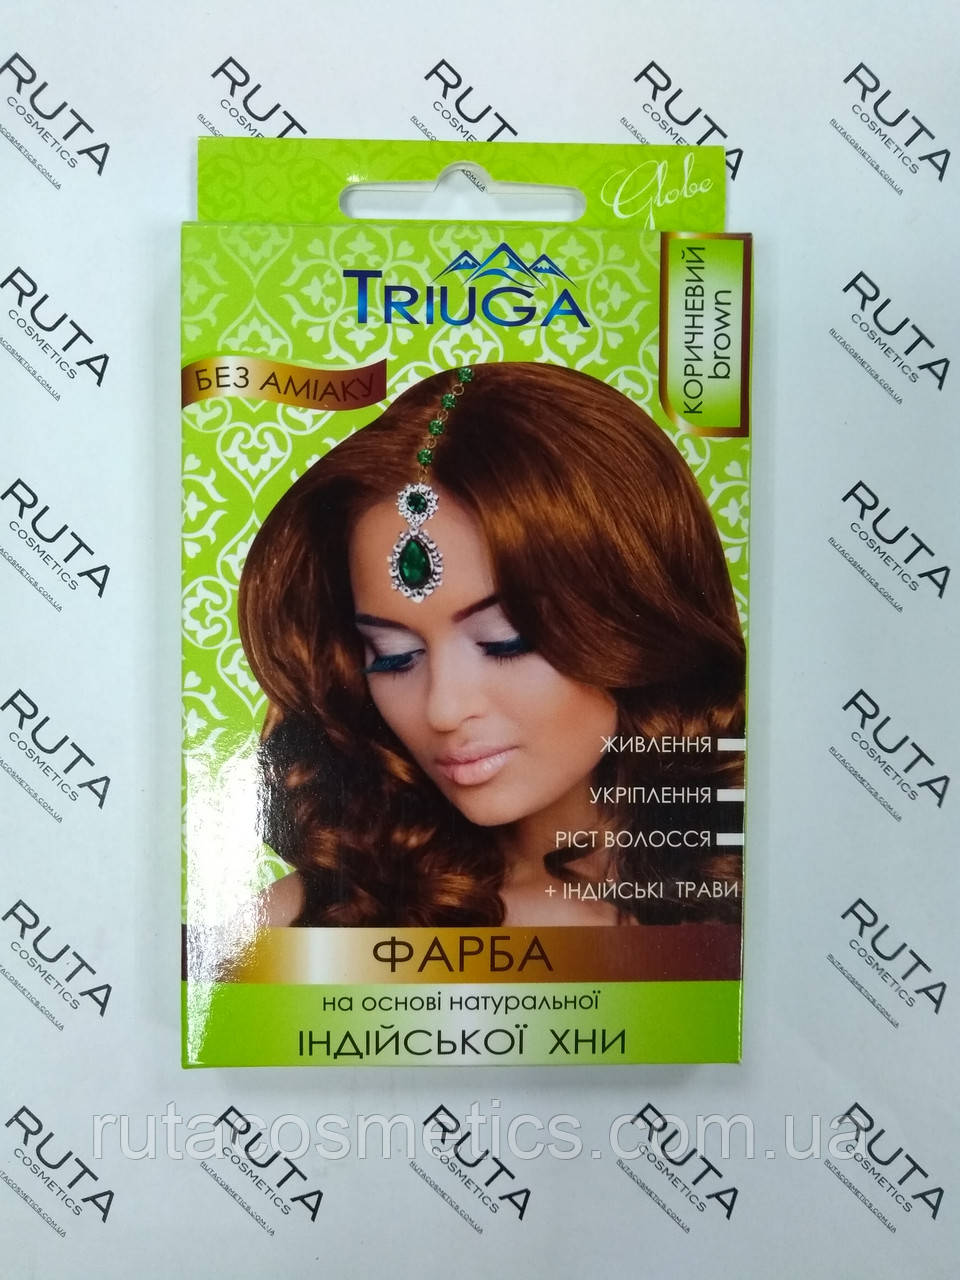 Triuga Herbal Фарба для волосся на основі натуральної Хни "Коричневий"